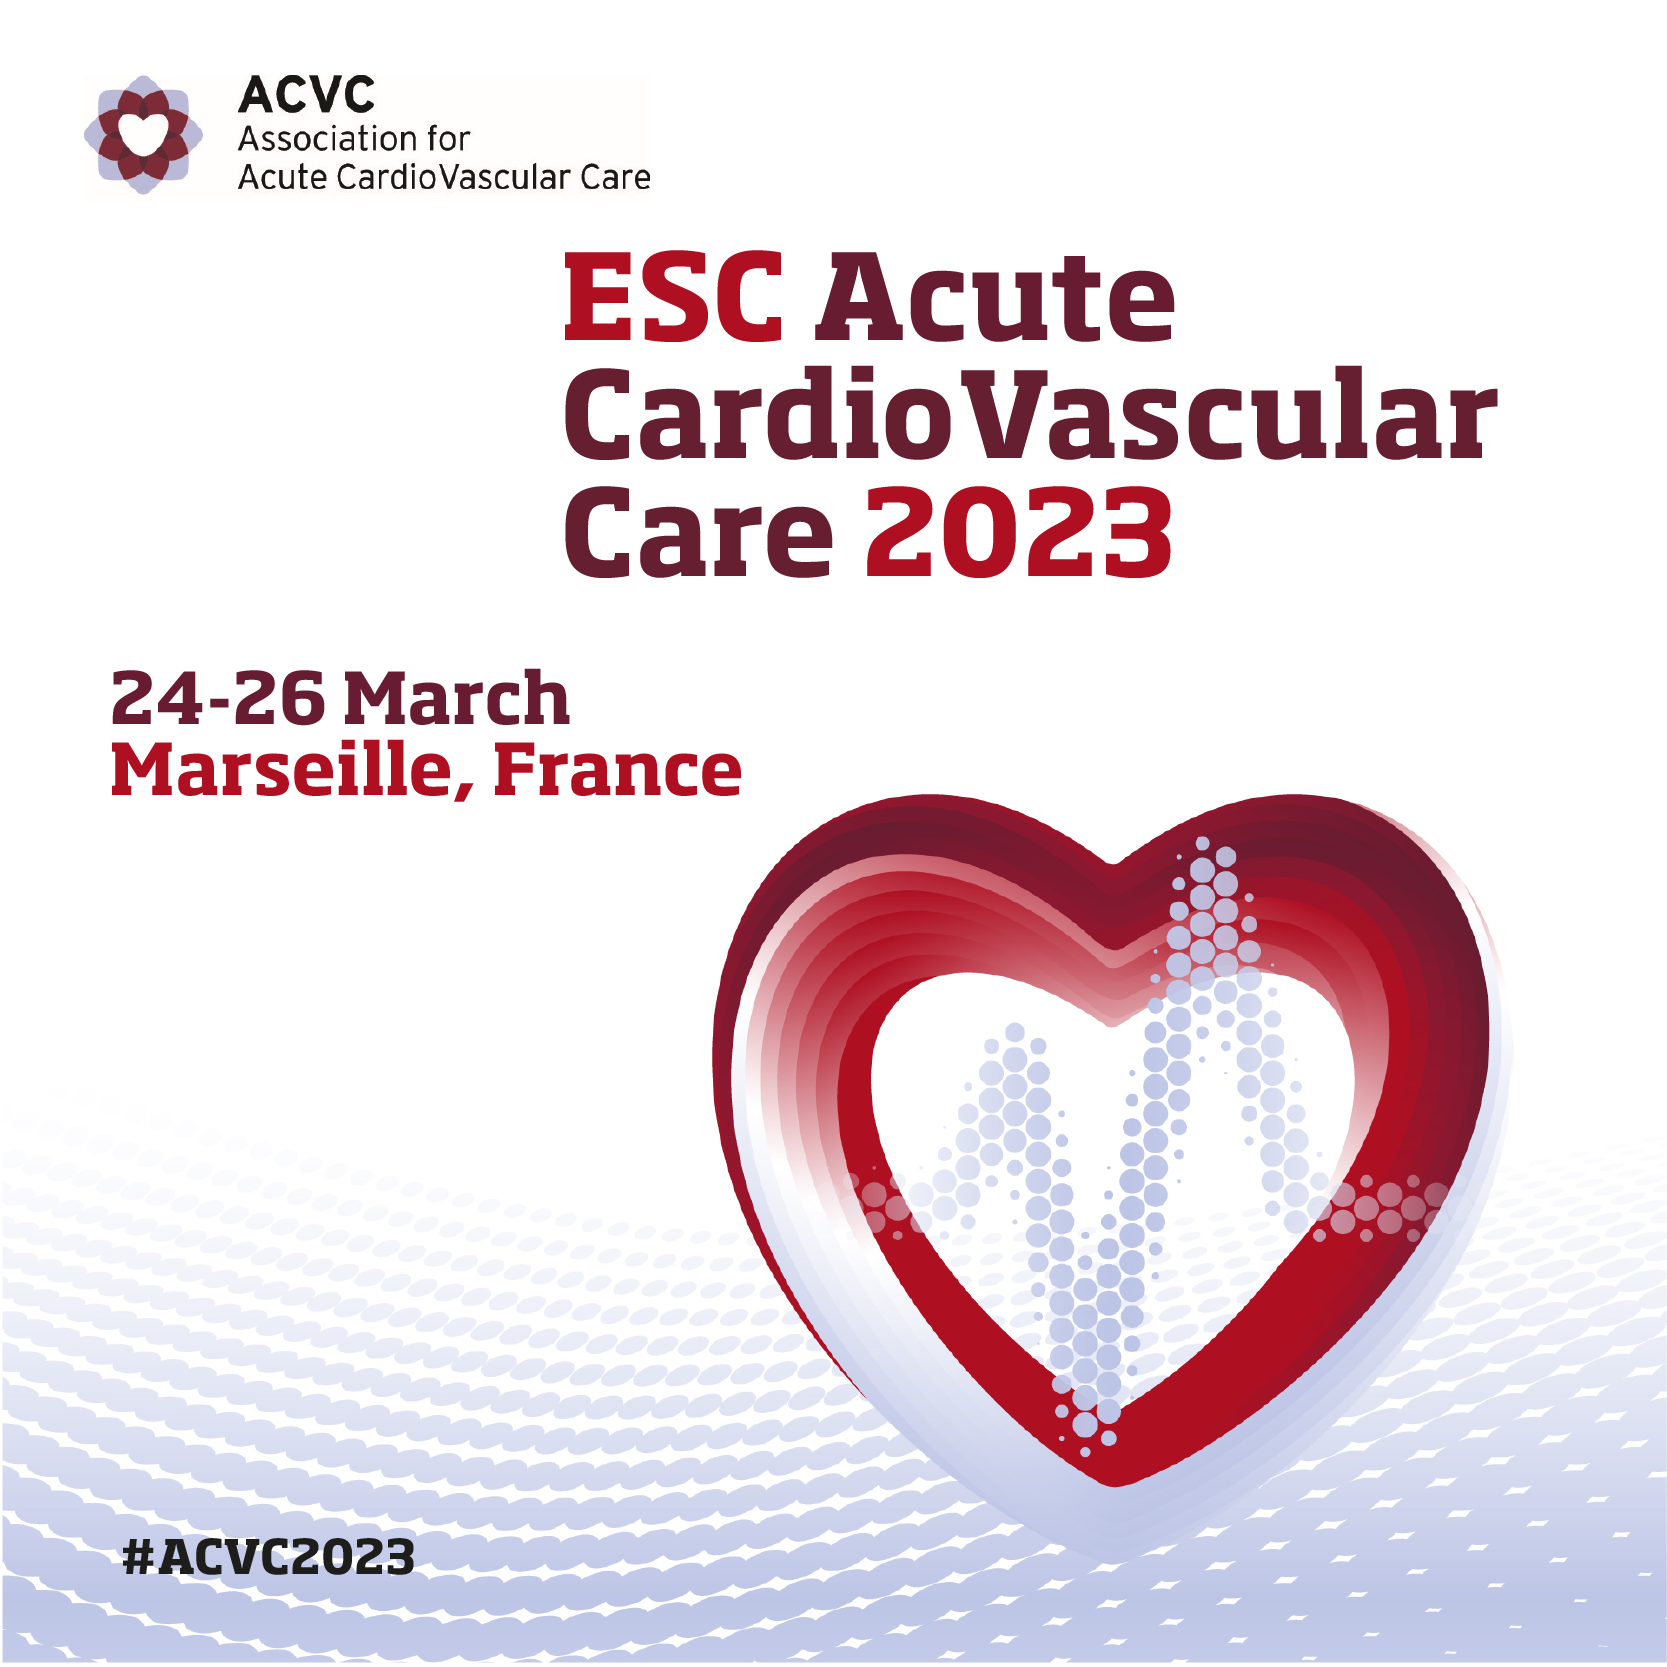 ESC Acute CardioVascular Care 2023 - ACVC 2023